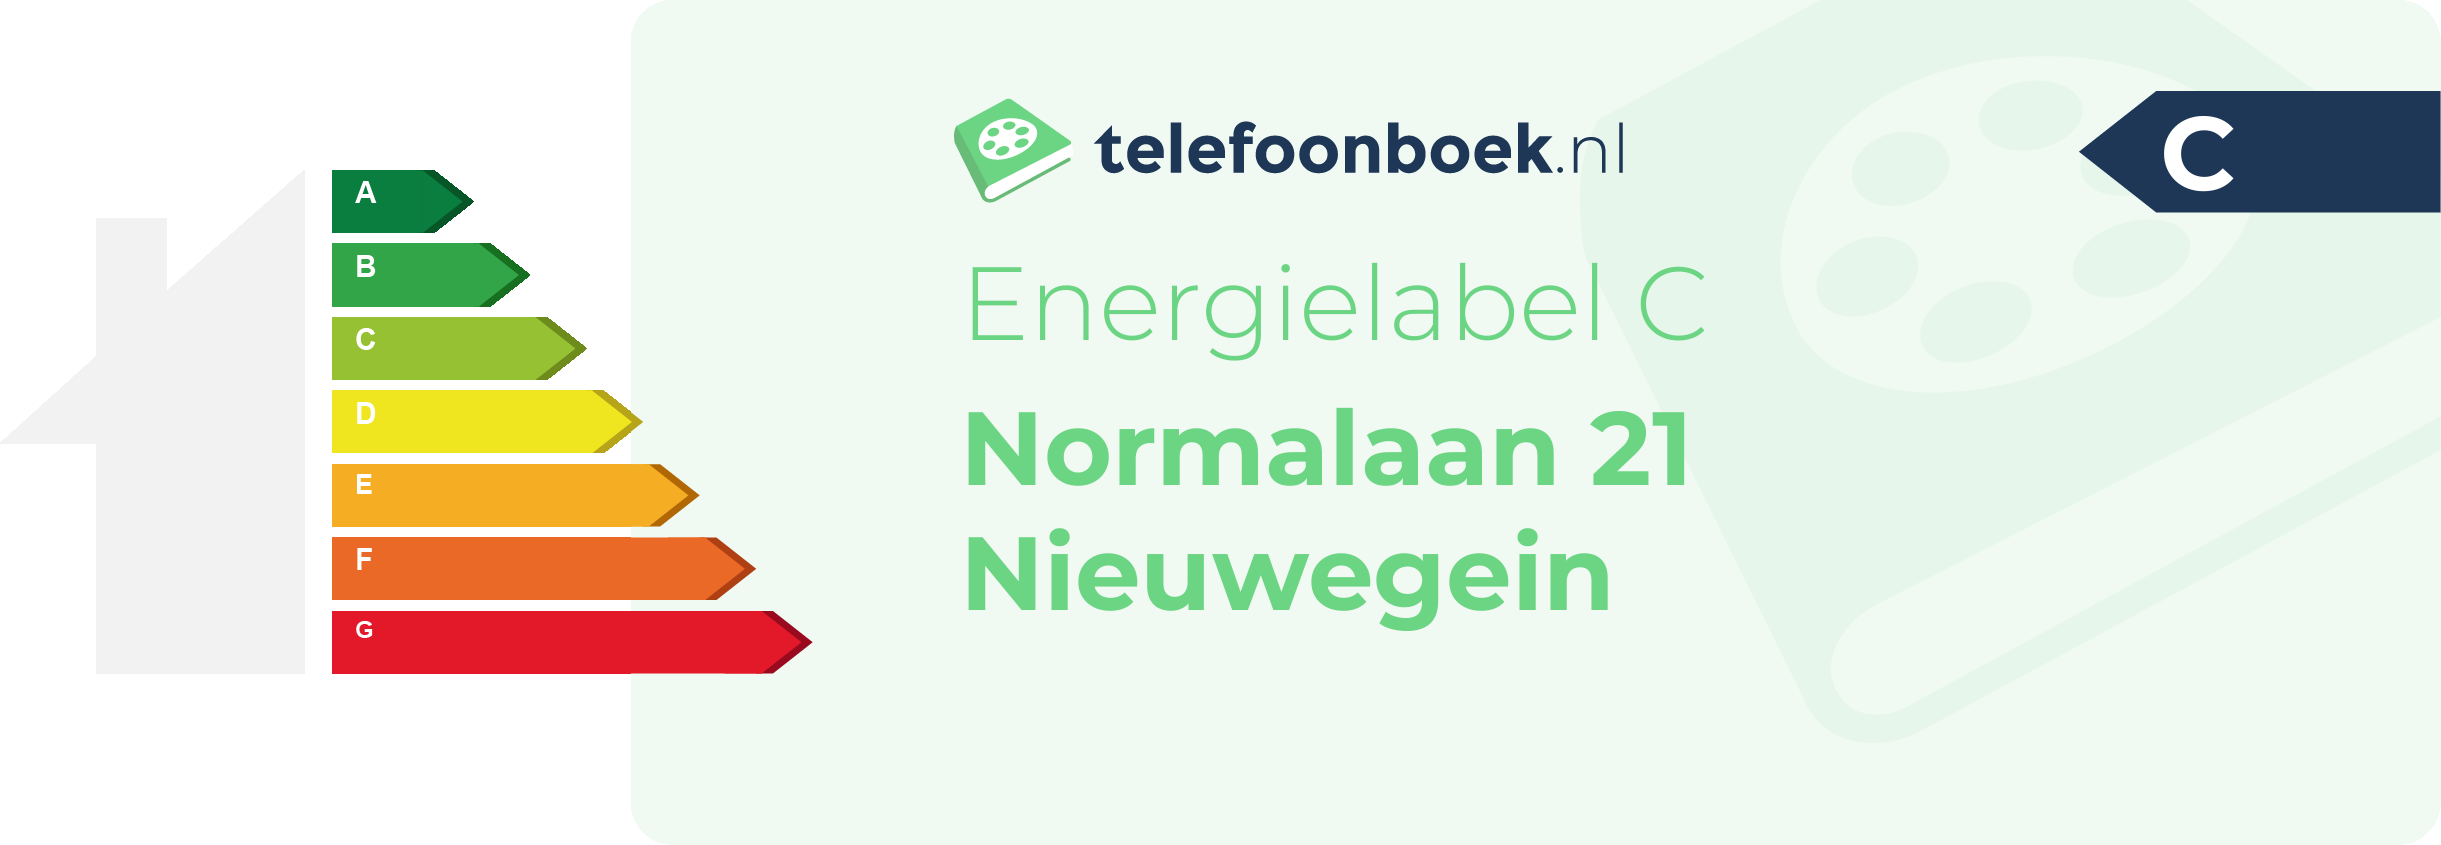 Energielabel Normalaan 21 Nieuwegein